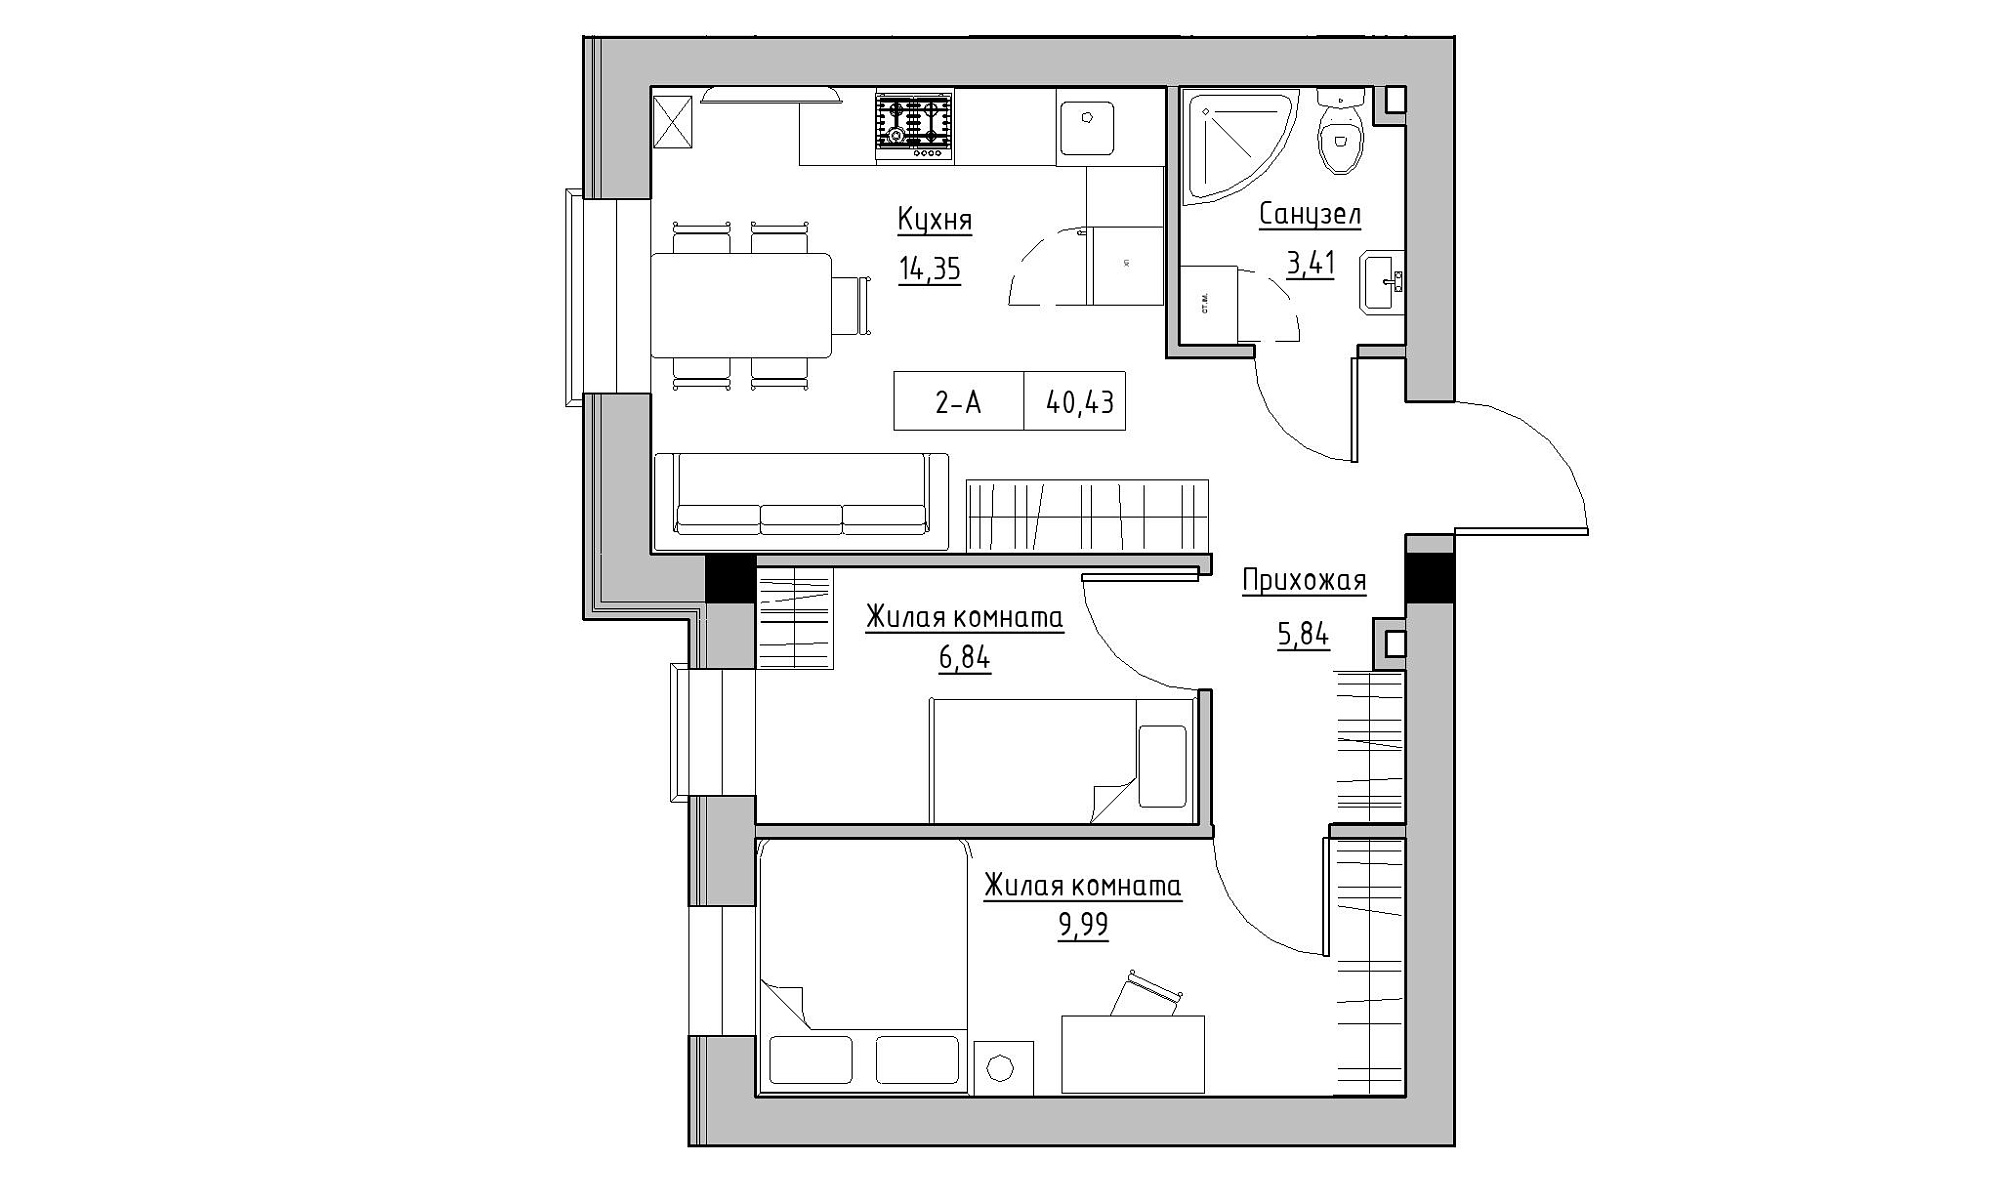 Планування 2-к квартира площею 40.43м2, KS-021-01/0004.